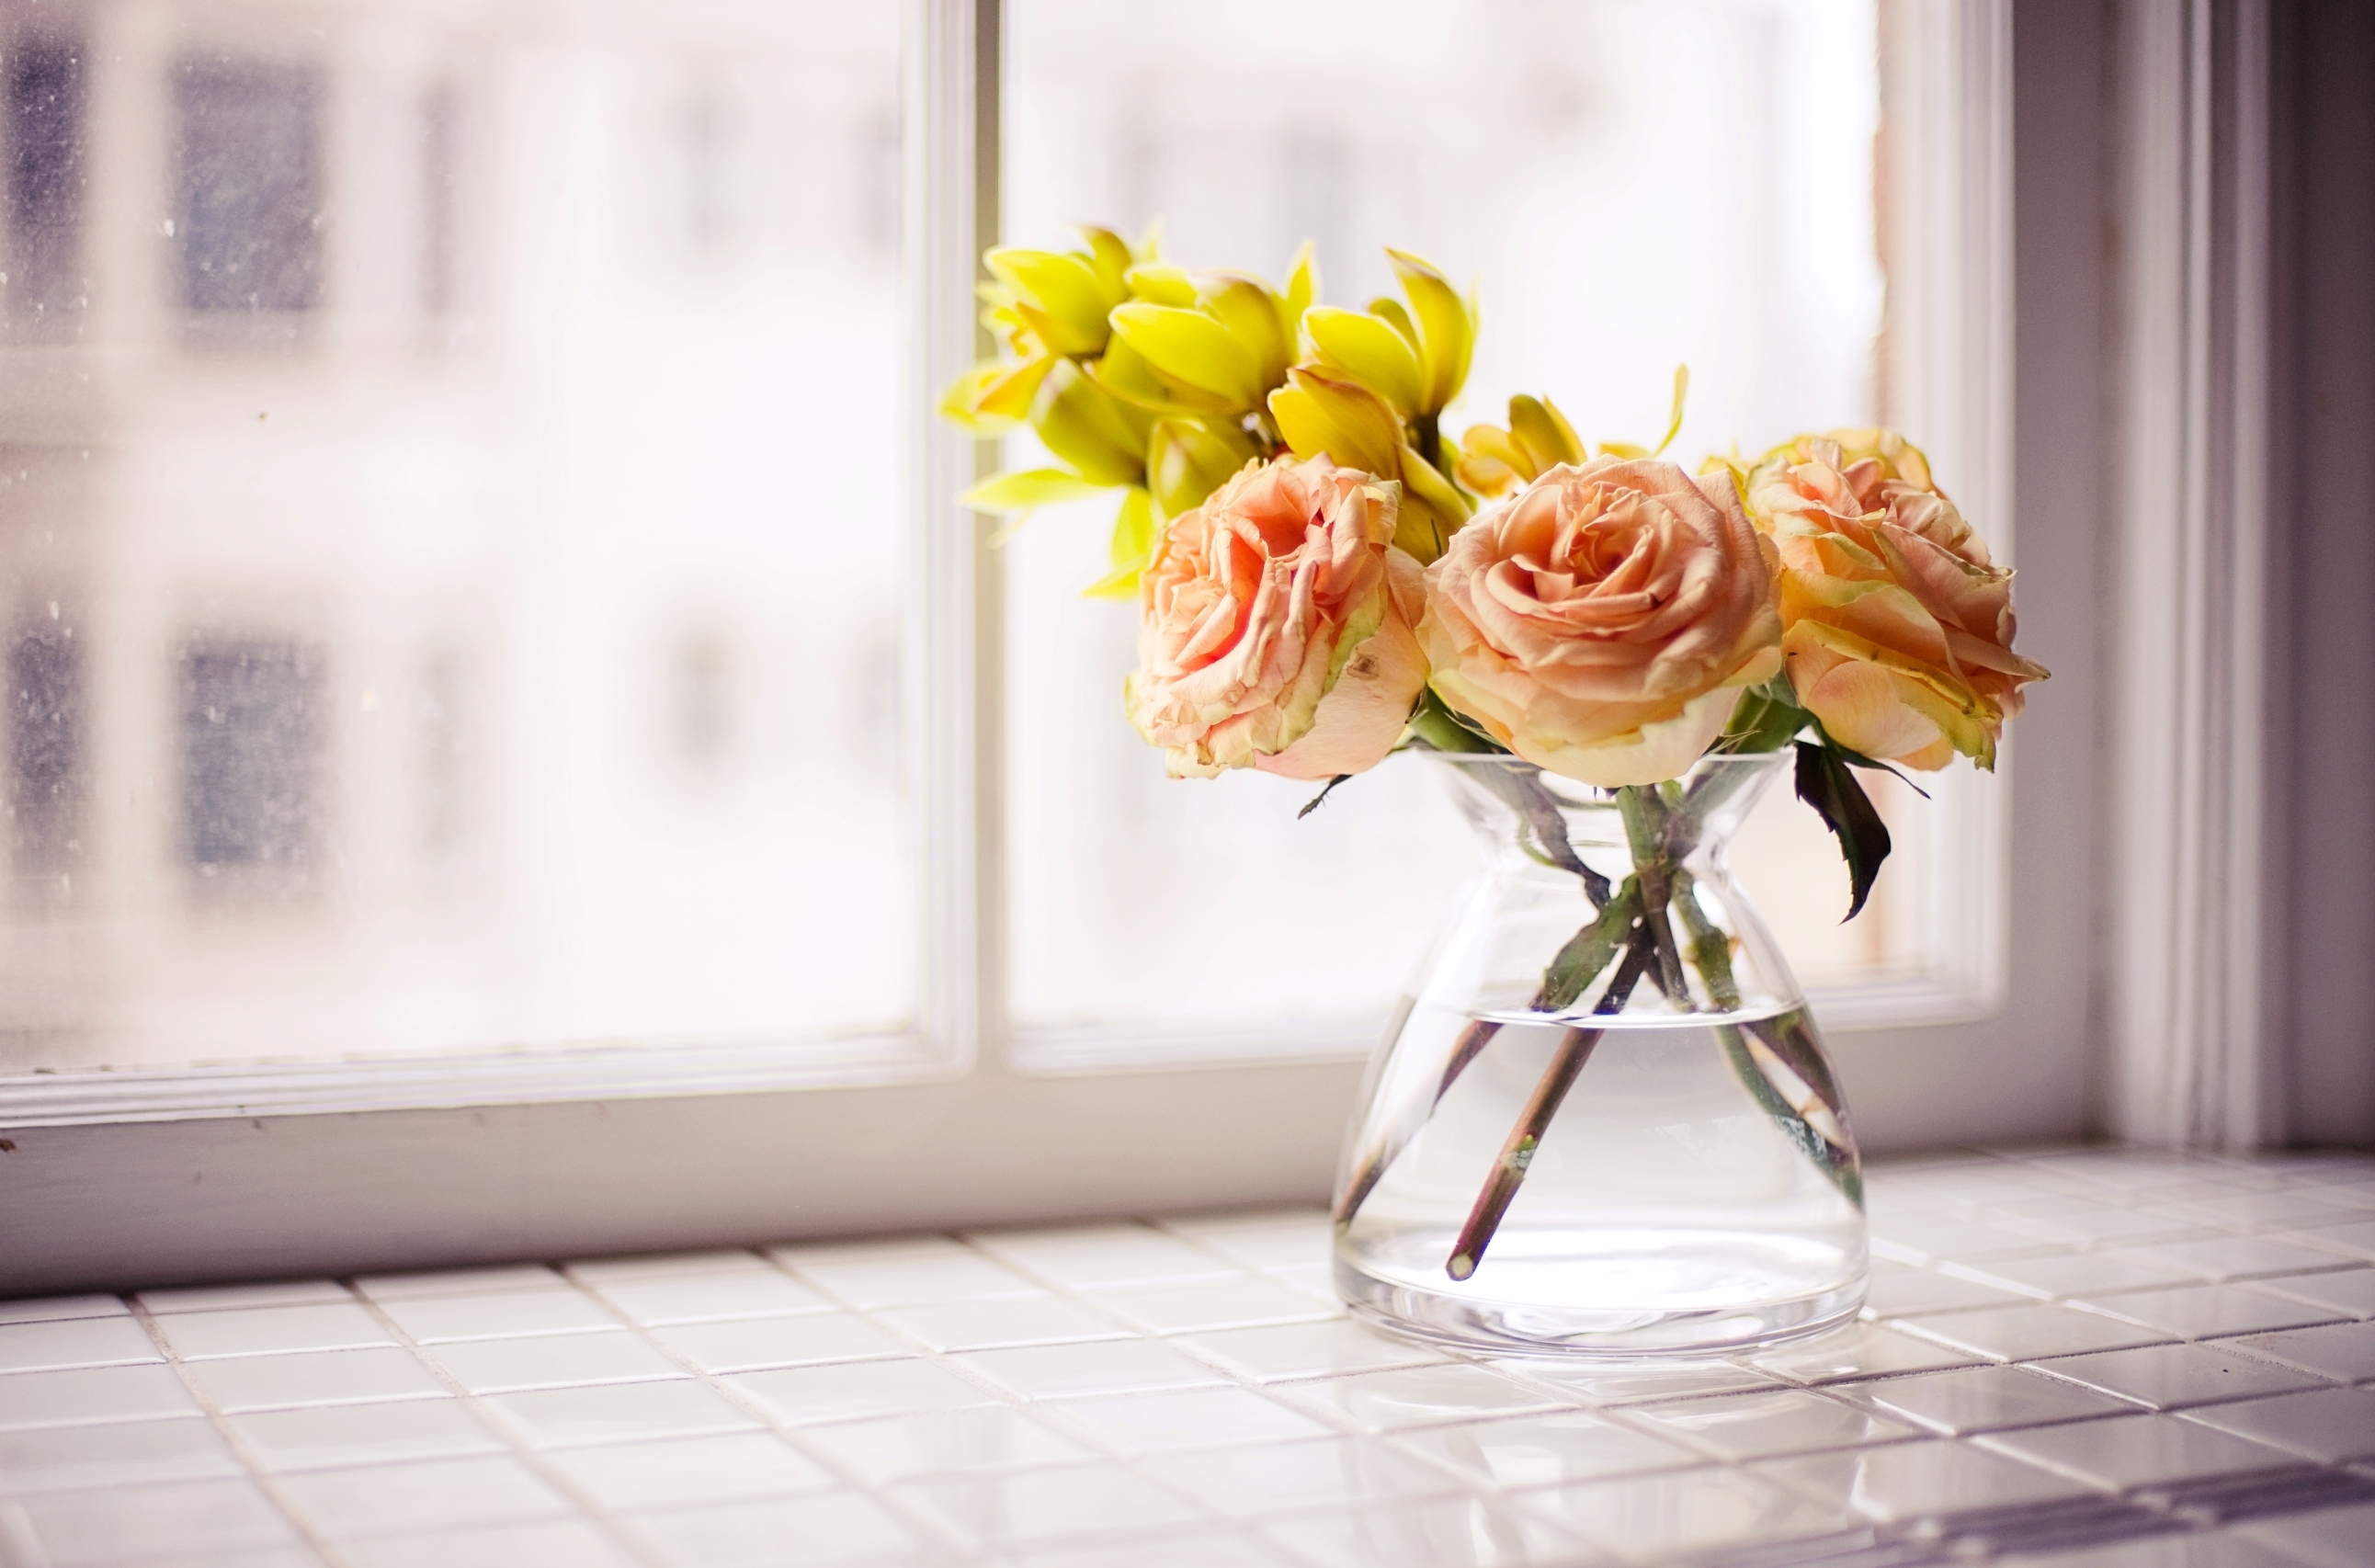 Картинка с цветами на столе. Цветы в вазе. Красивый букет в вазе. Нежный букет в вазе. Цветы на столе.